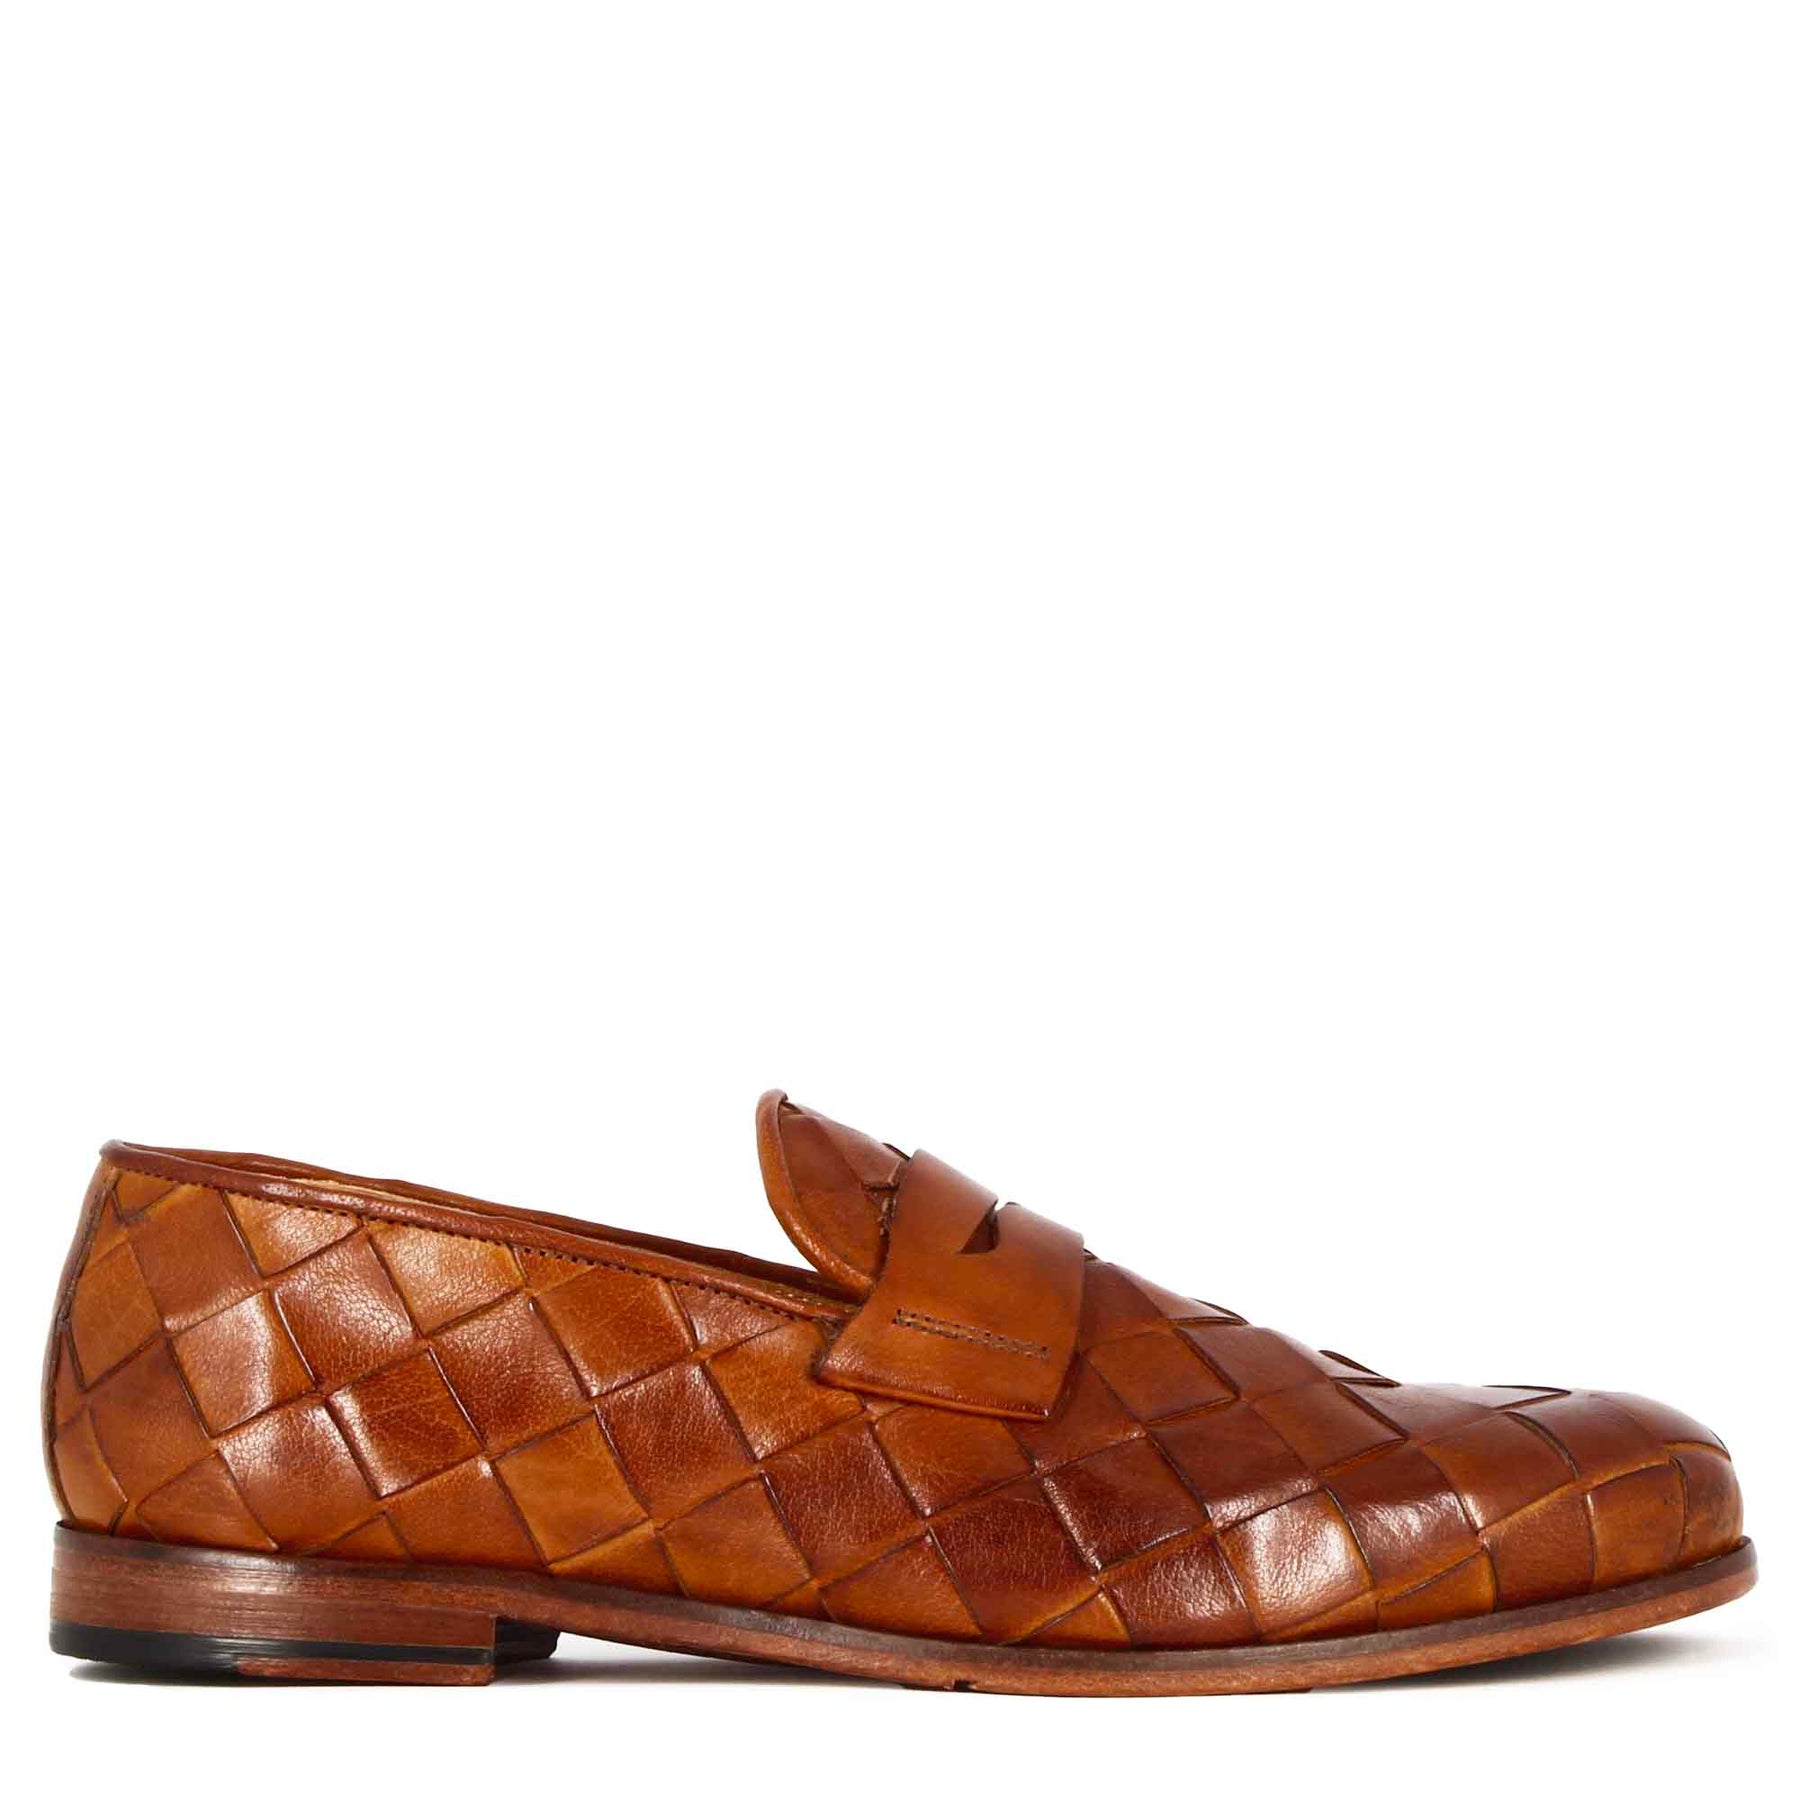 Elegant vintage brown men's loafer in woven leather